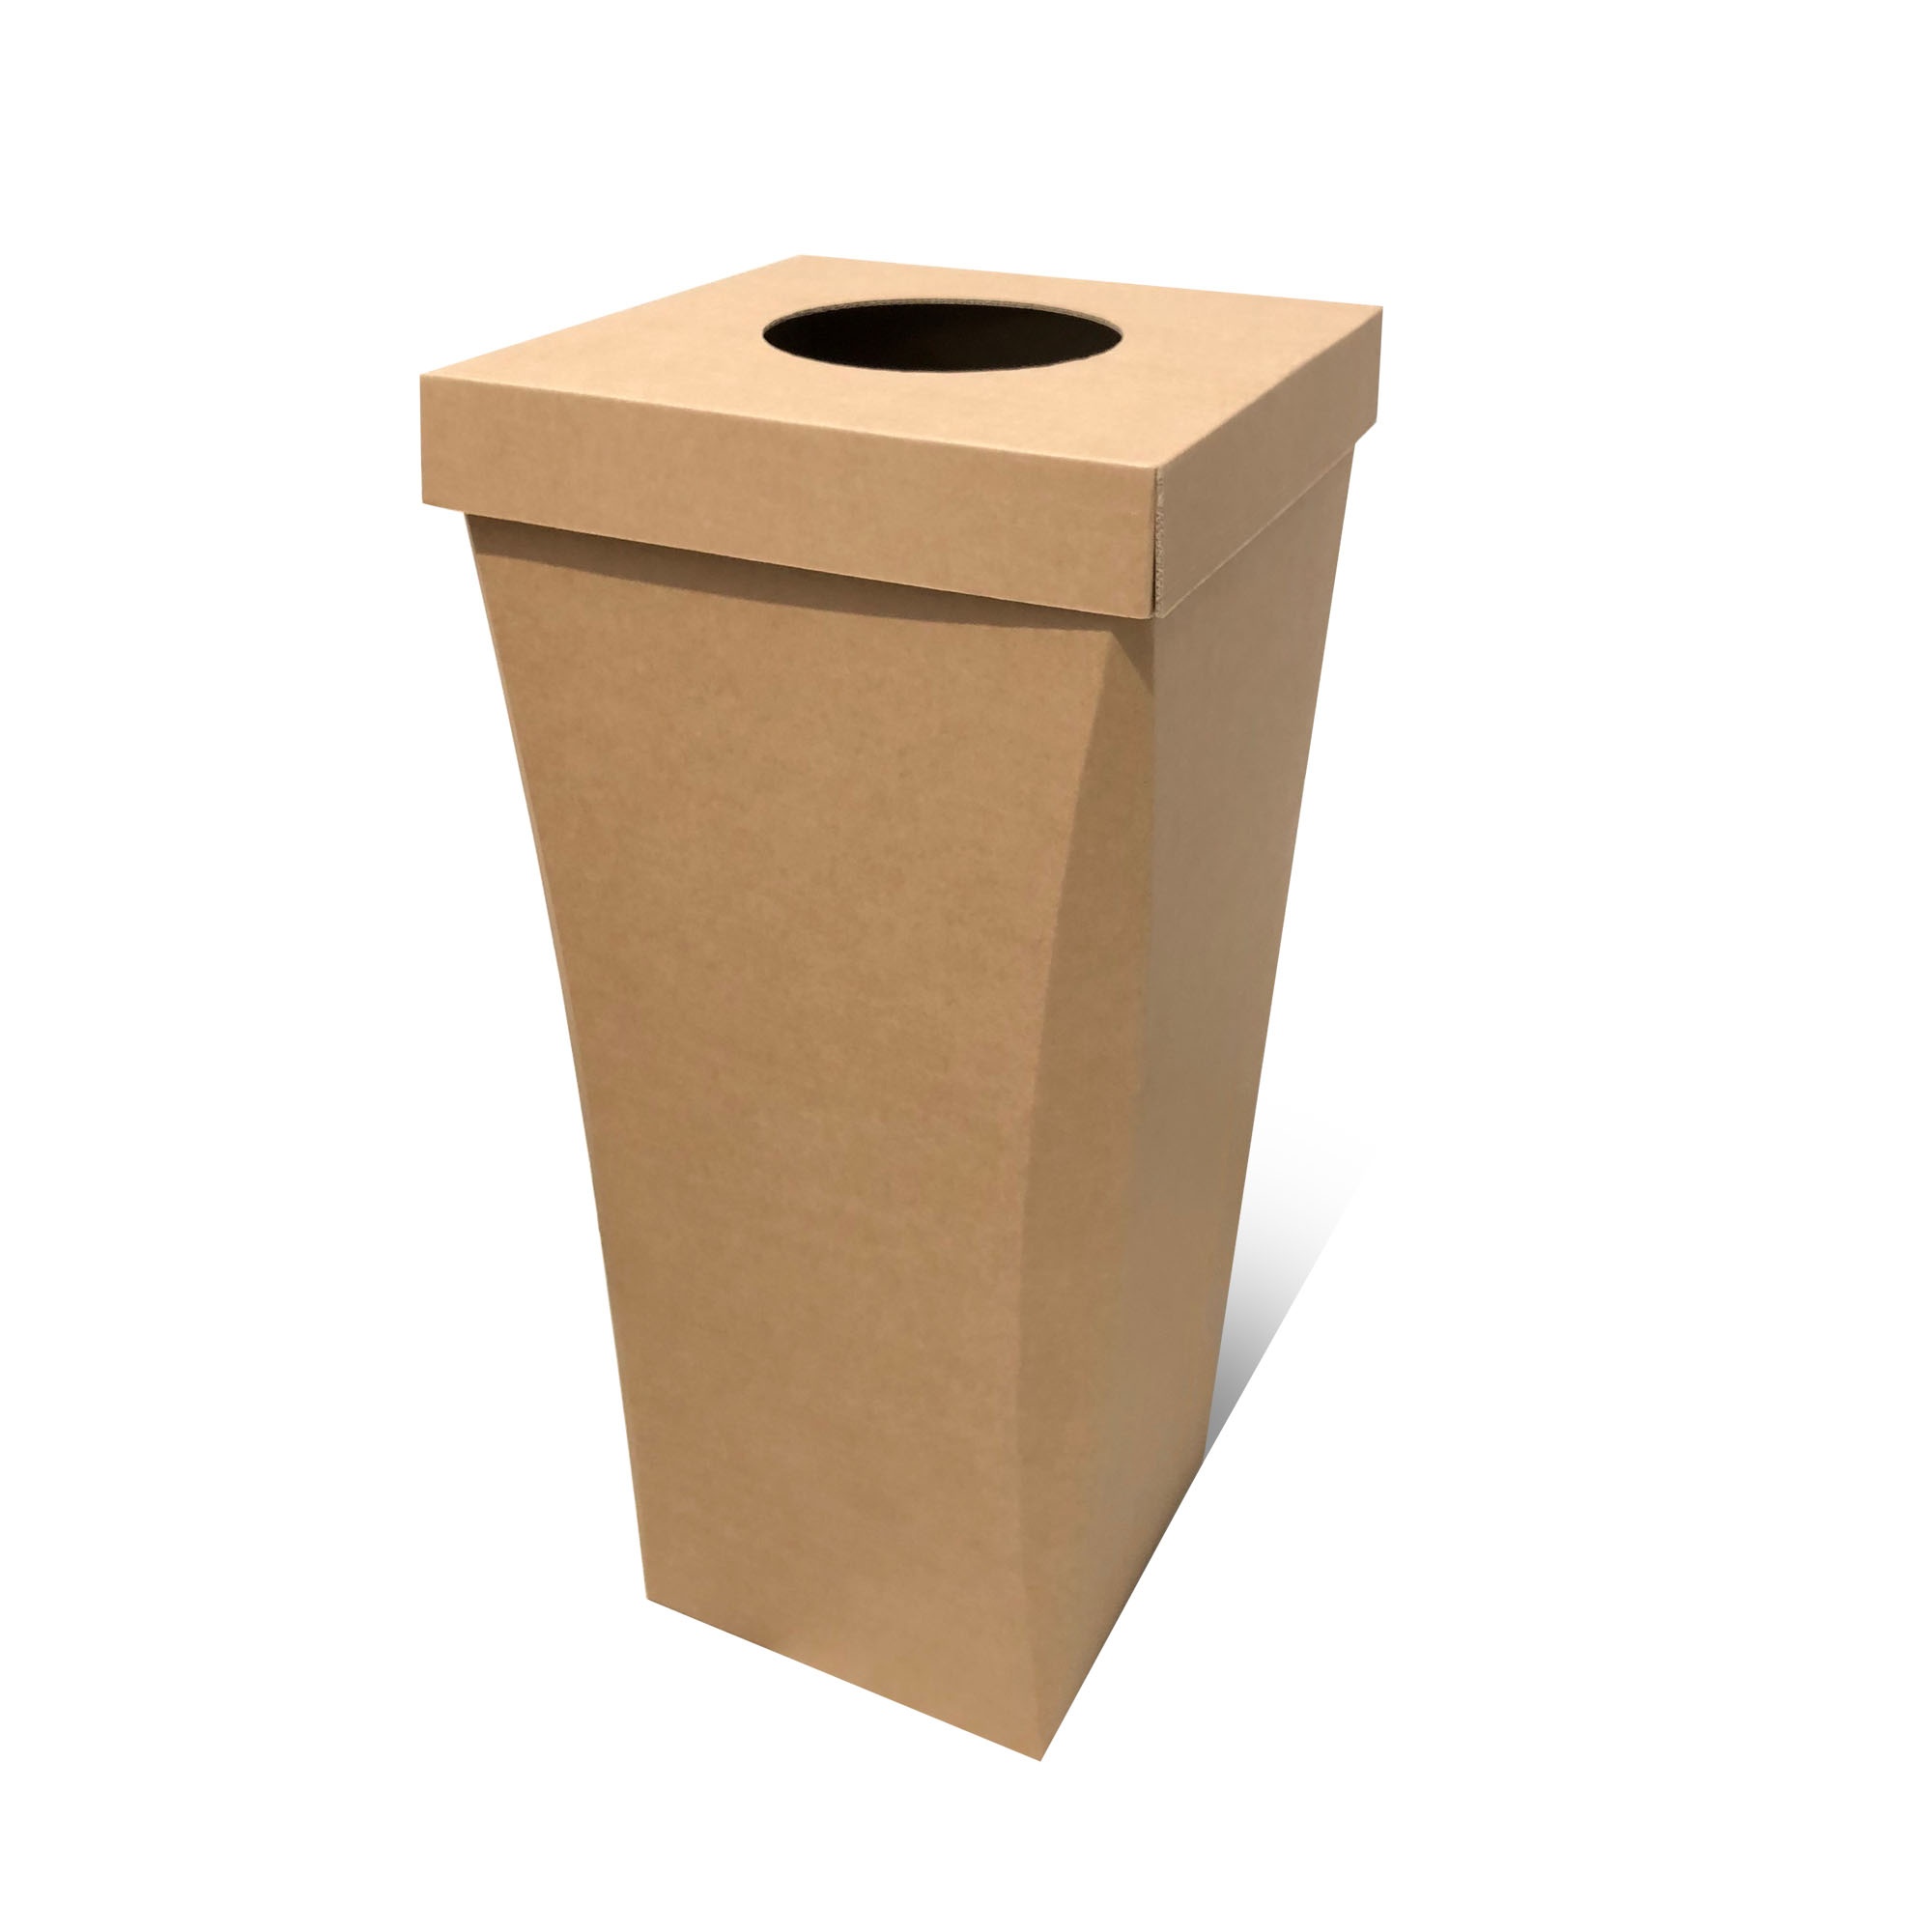 Poubelle carton recyclé 100L, carton blanc ou brun personnalisable